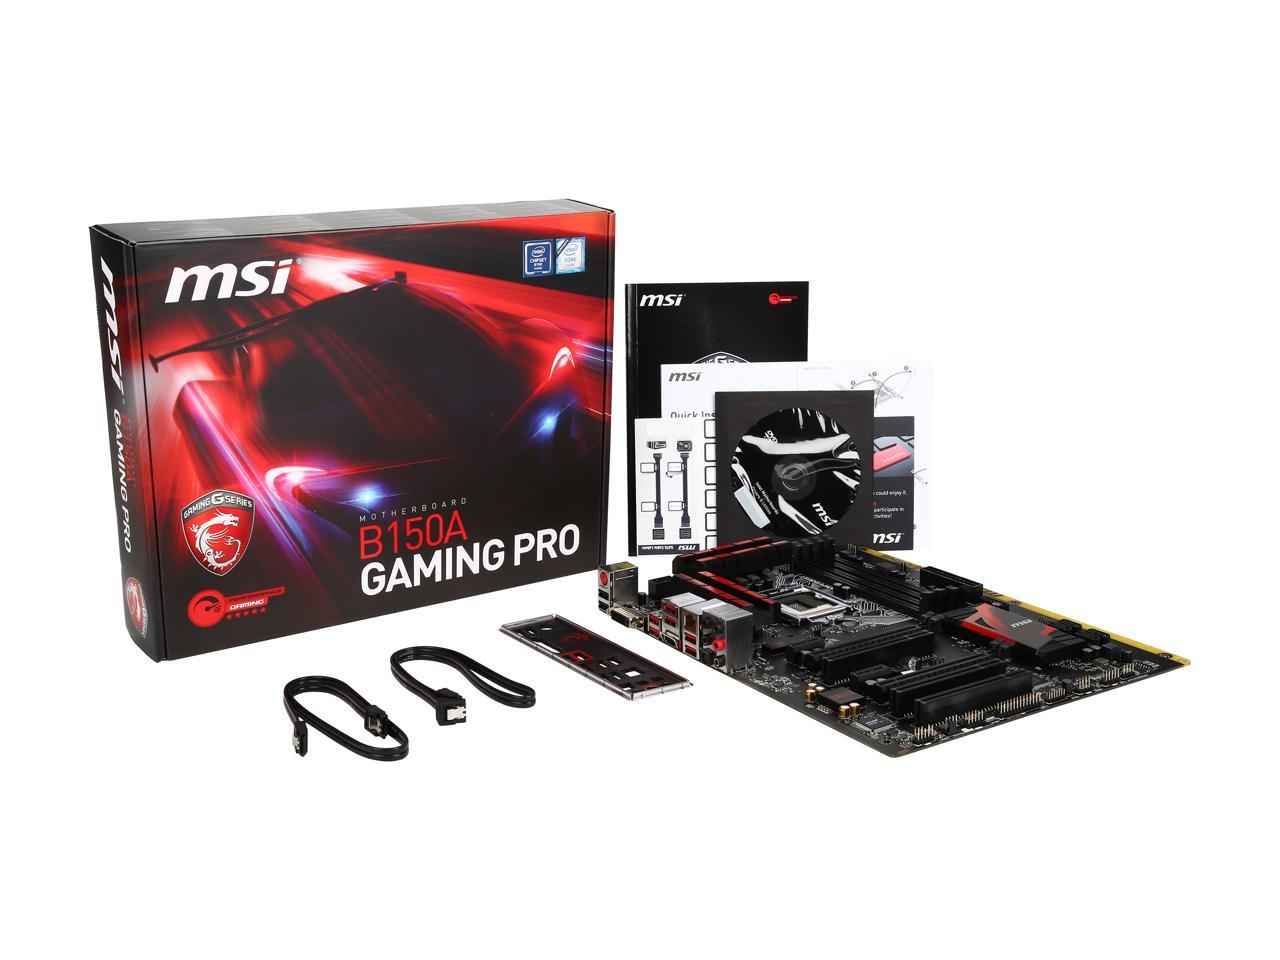 Red pro gaming. MSI b150 Gamer. MSI b150a Gaming Pro. B150m Pro Gaming MSI USB 3.0. MSI b150 Gaming m3.